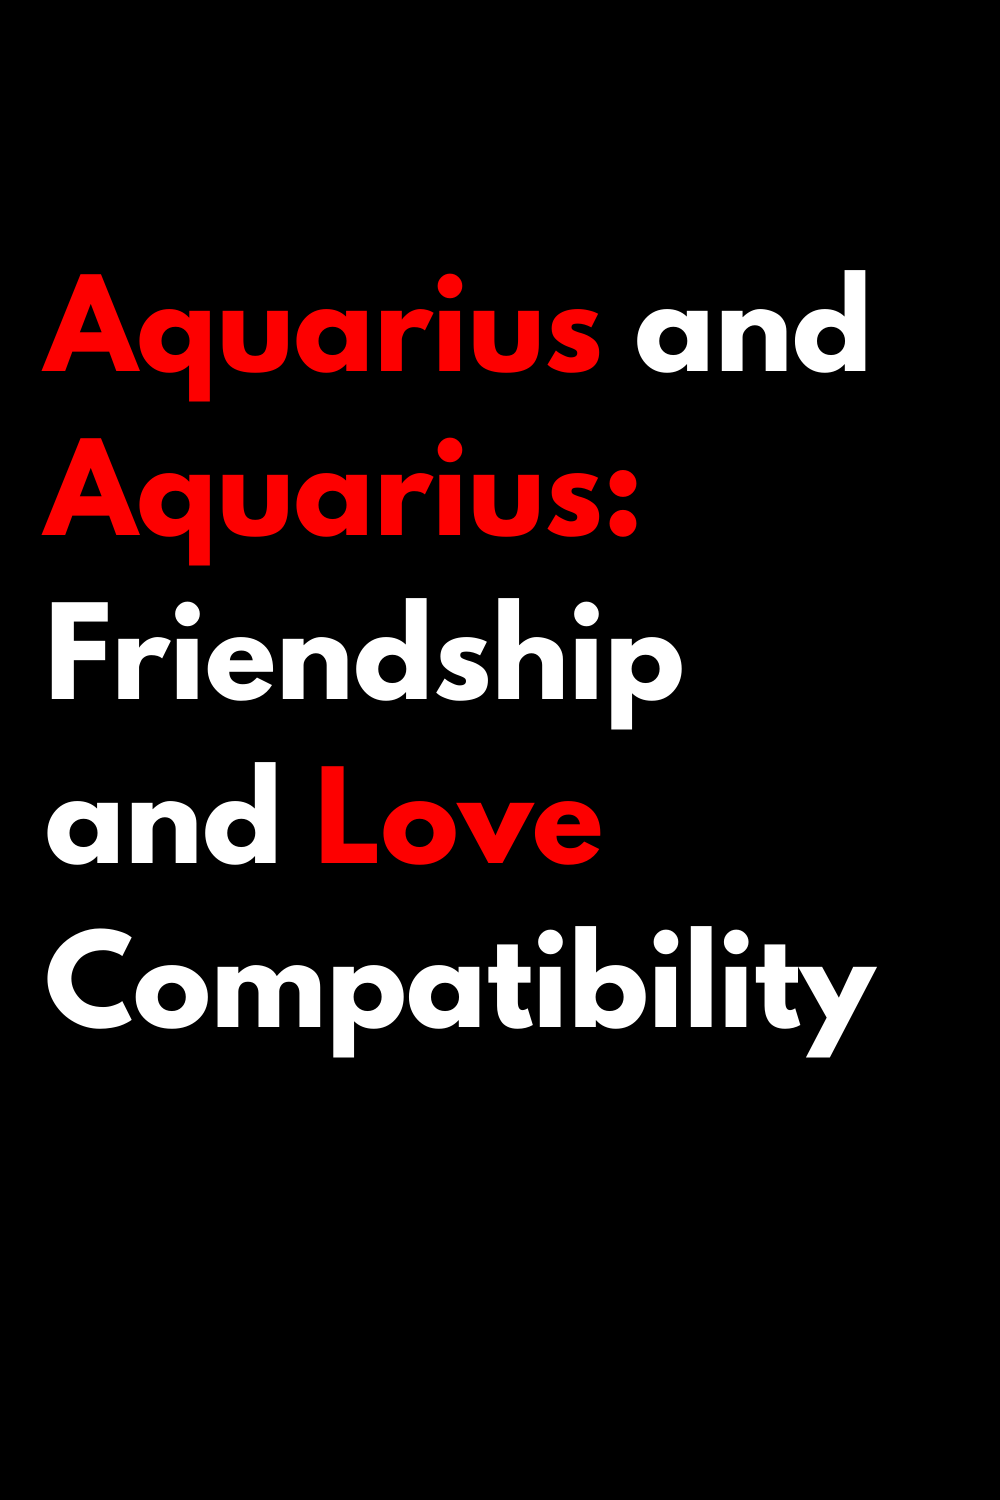 Aquarius and Aquarius: Friendship and Love Compatibility